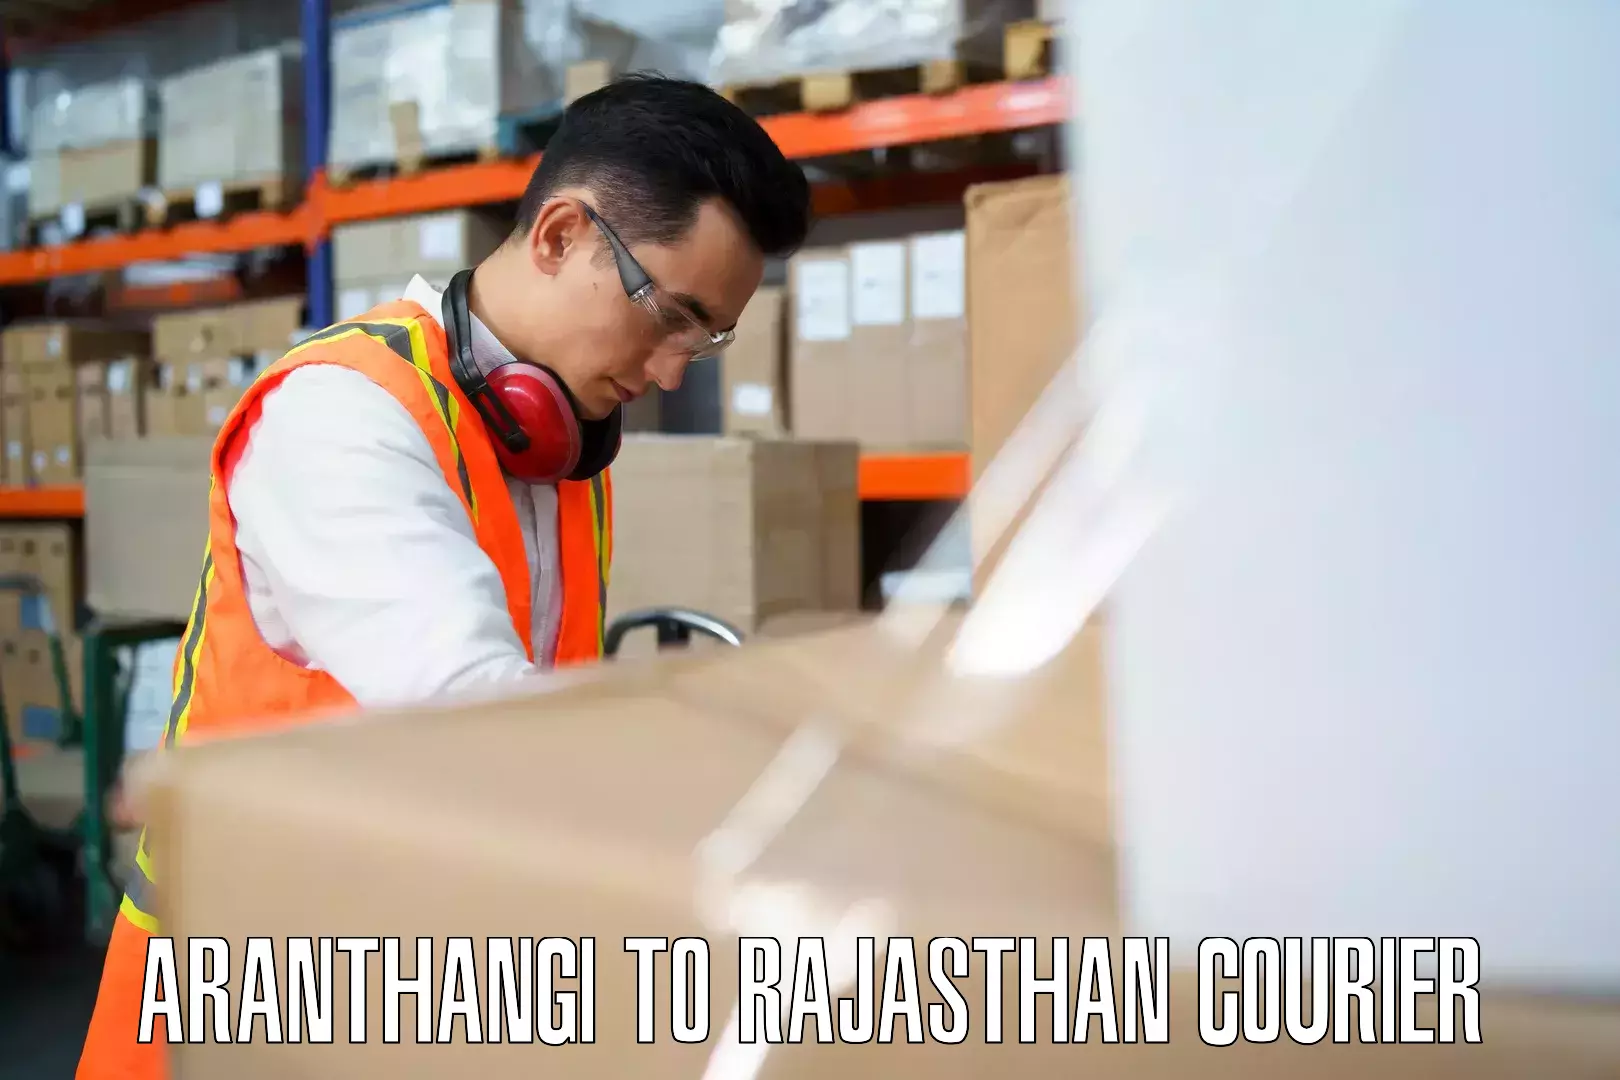 Personalized luggage shipping in Aranthangi to Kishangarh